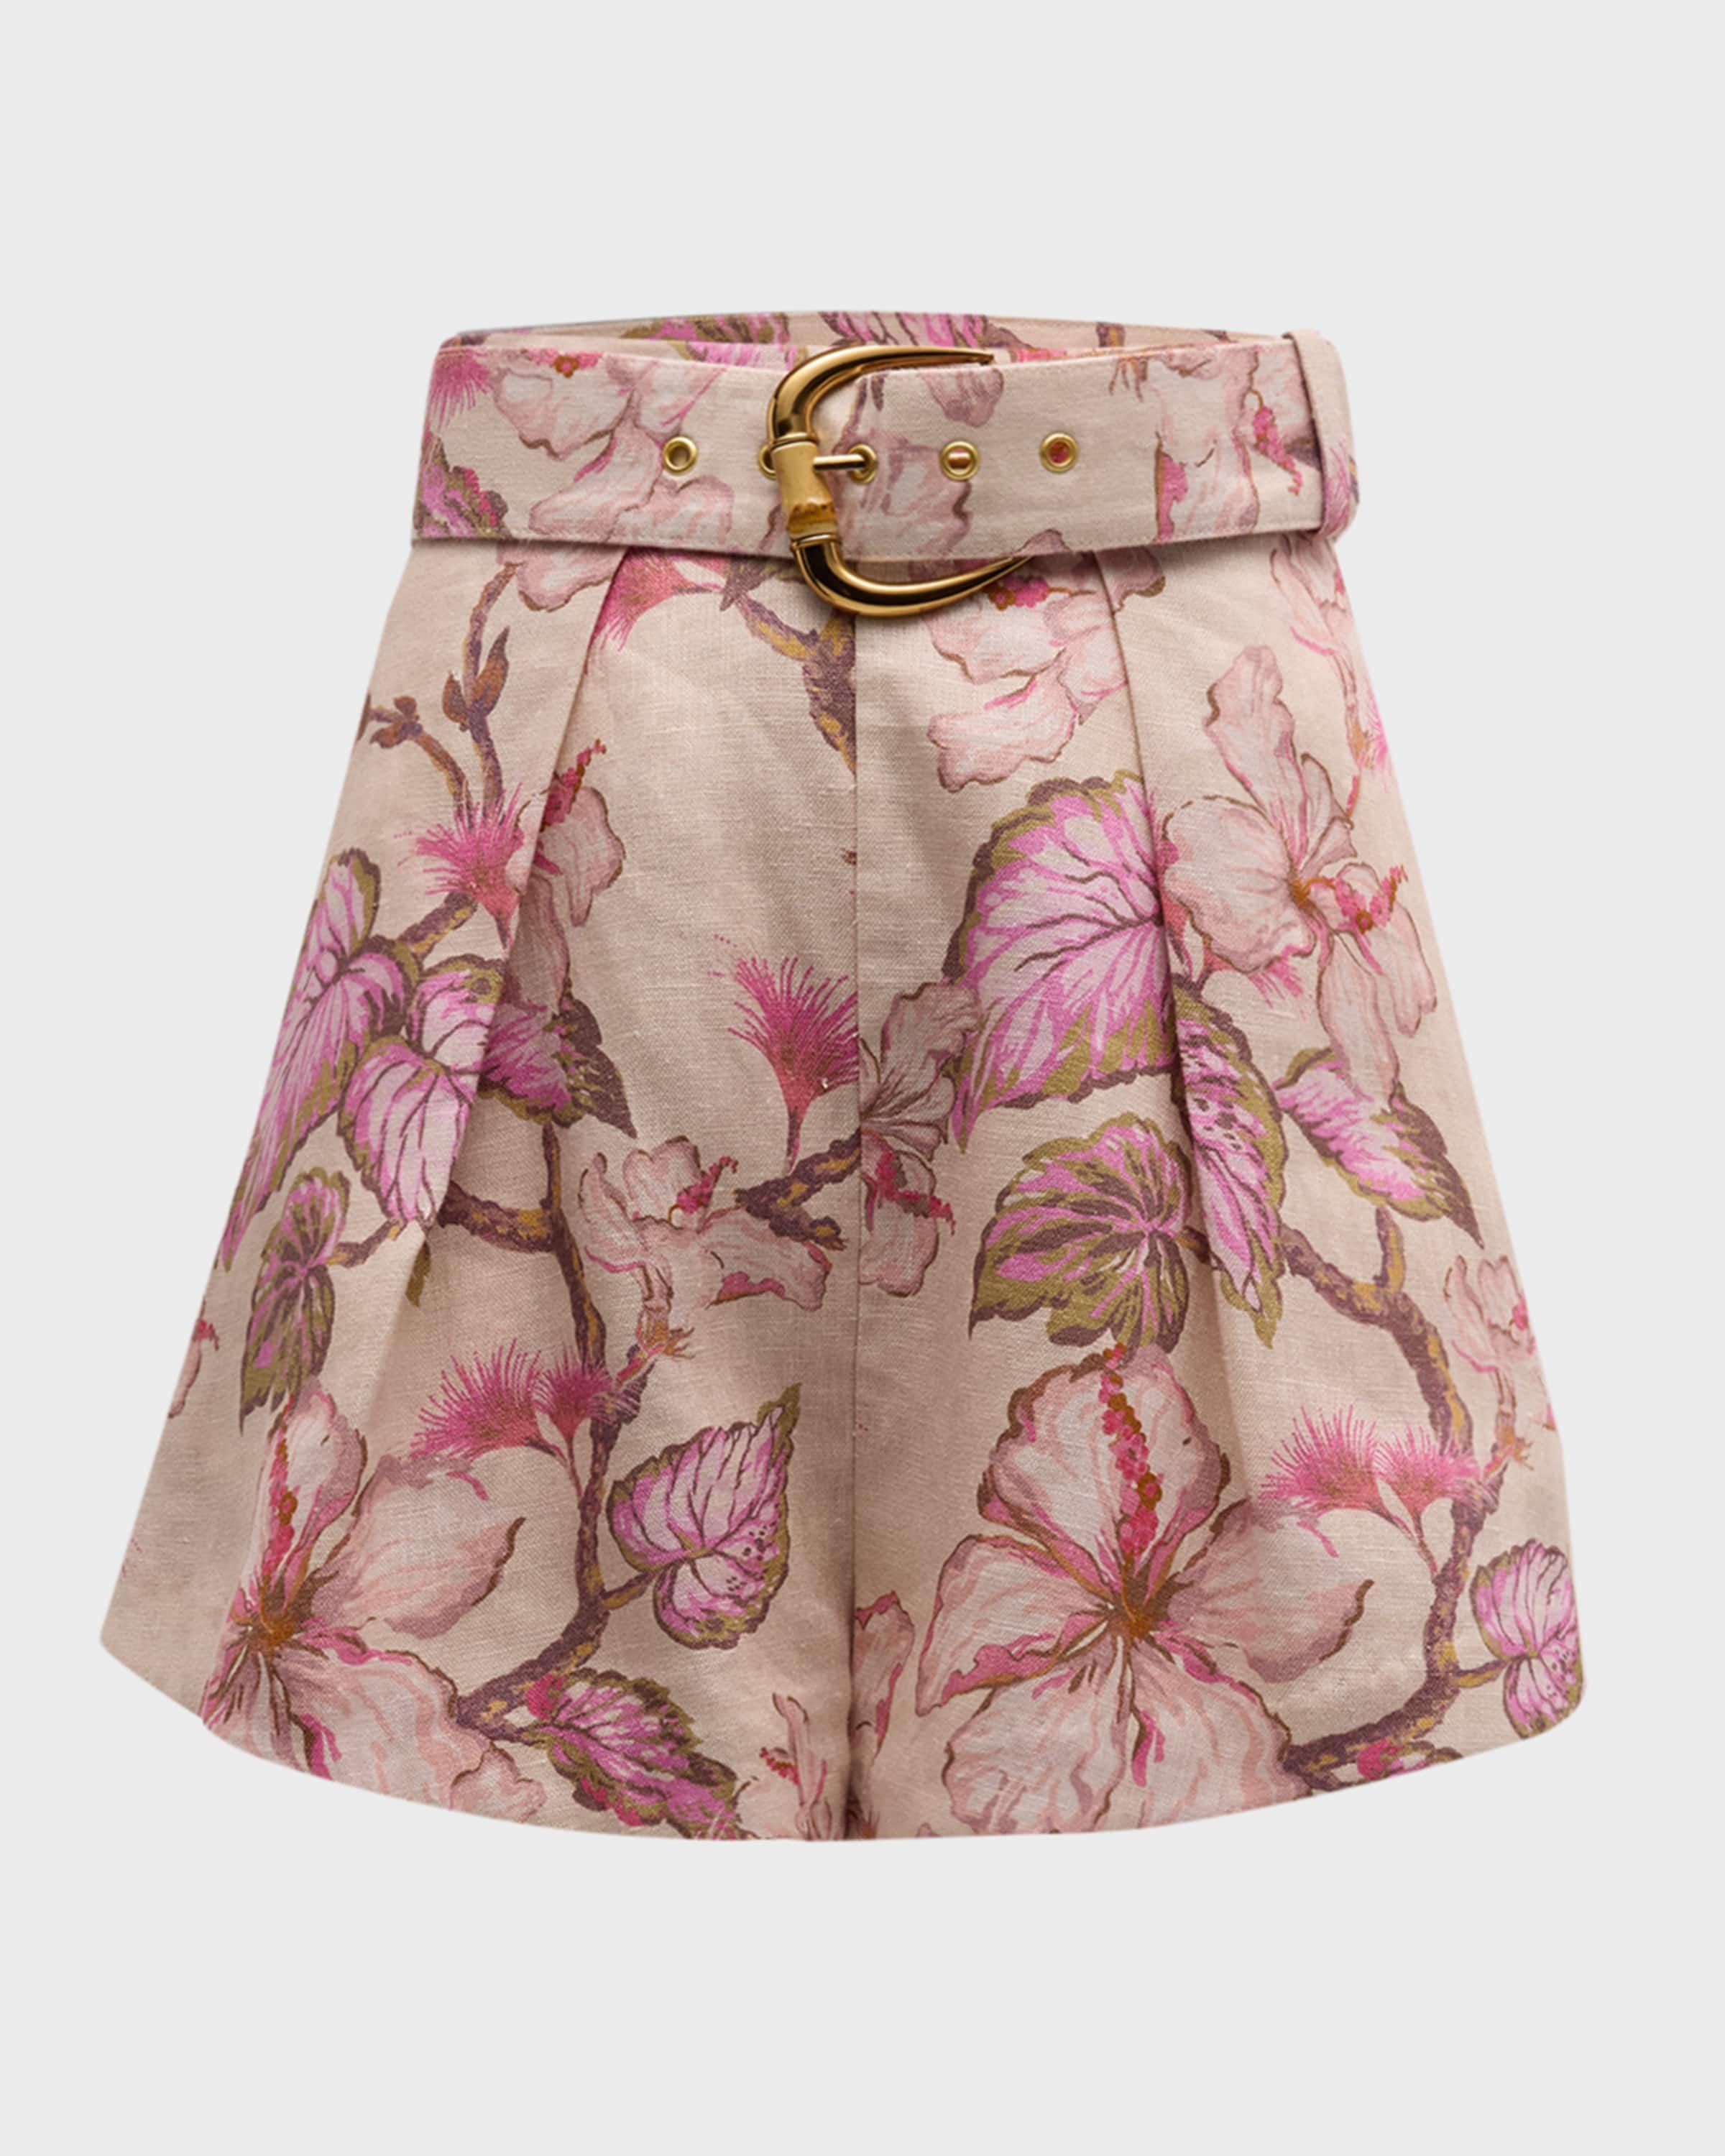 Matchmaker Floral Tuck Shorts - 1